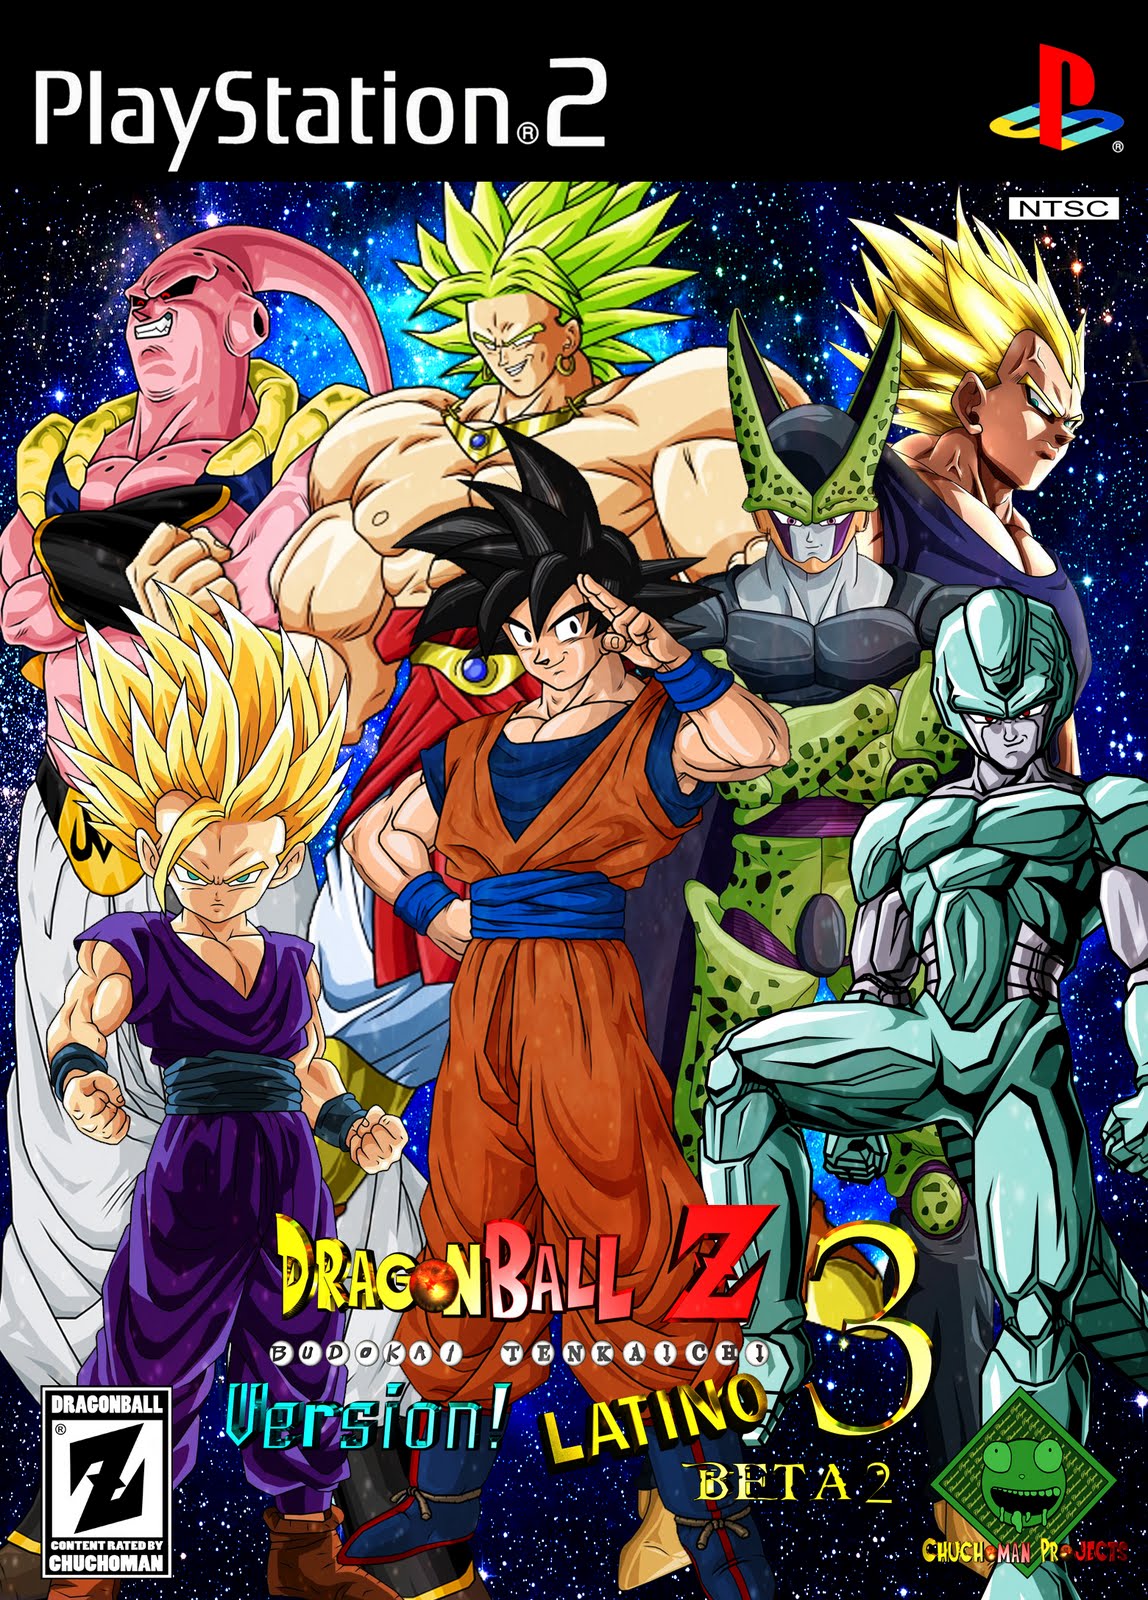 Dragon Ball Z Budokai Tenkaichi 3 ISO Torneo Del Poder - Main Menu and  Overall View 